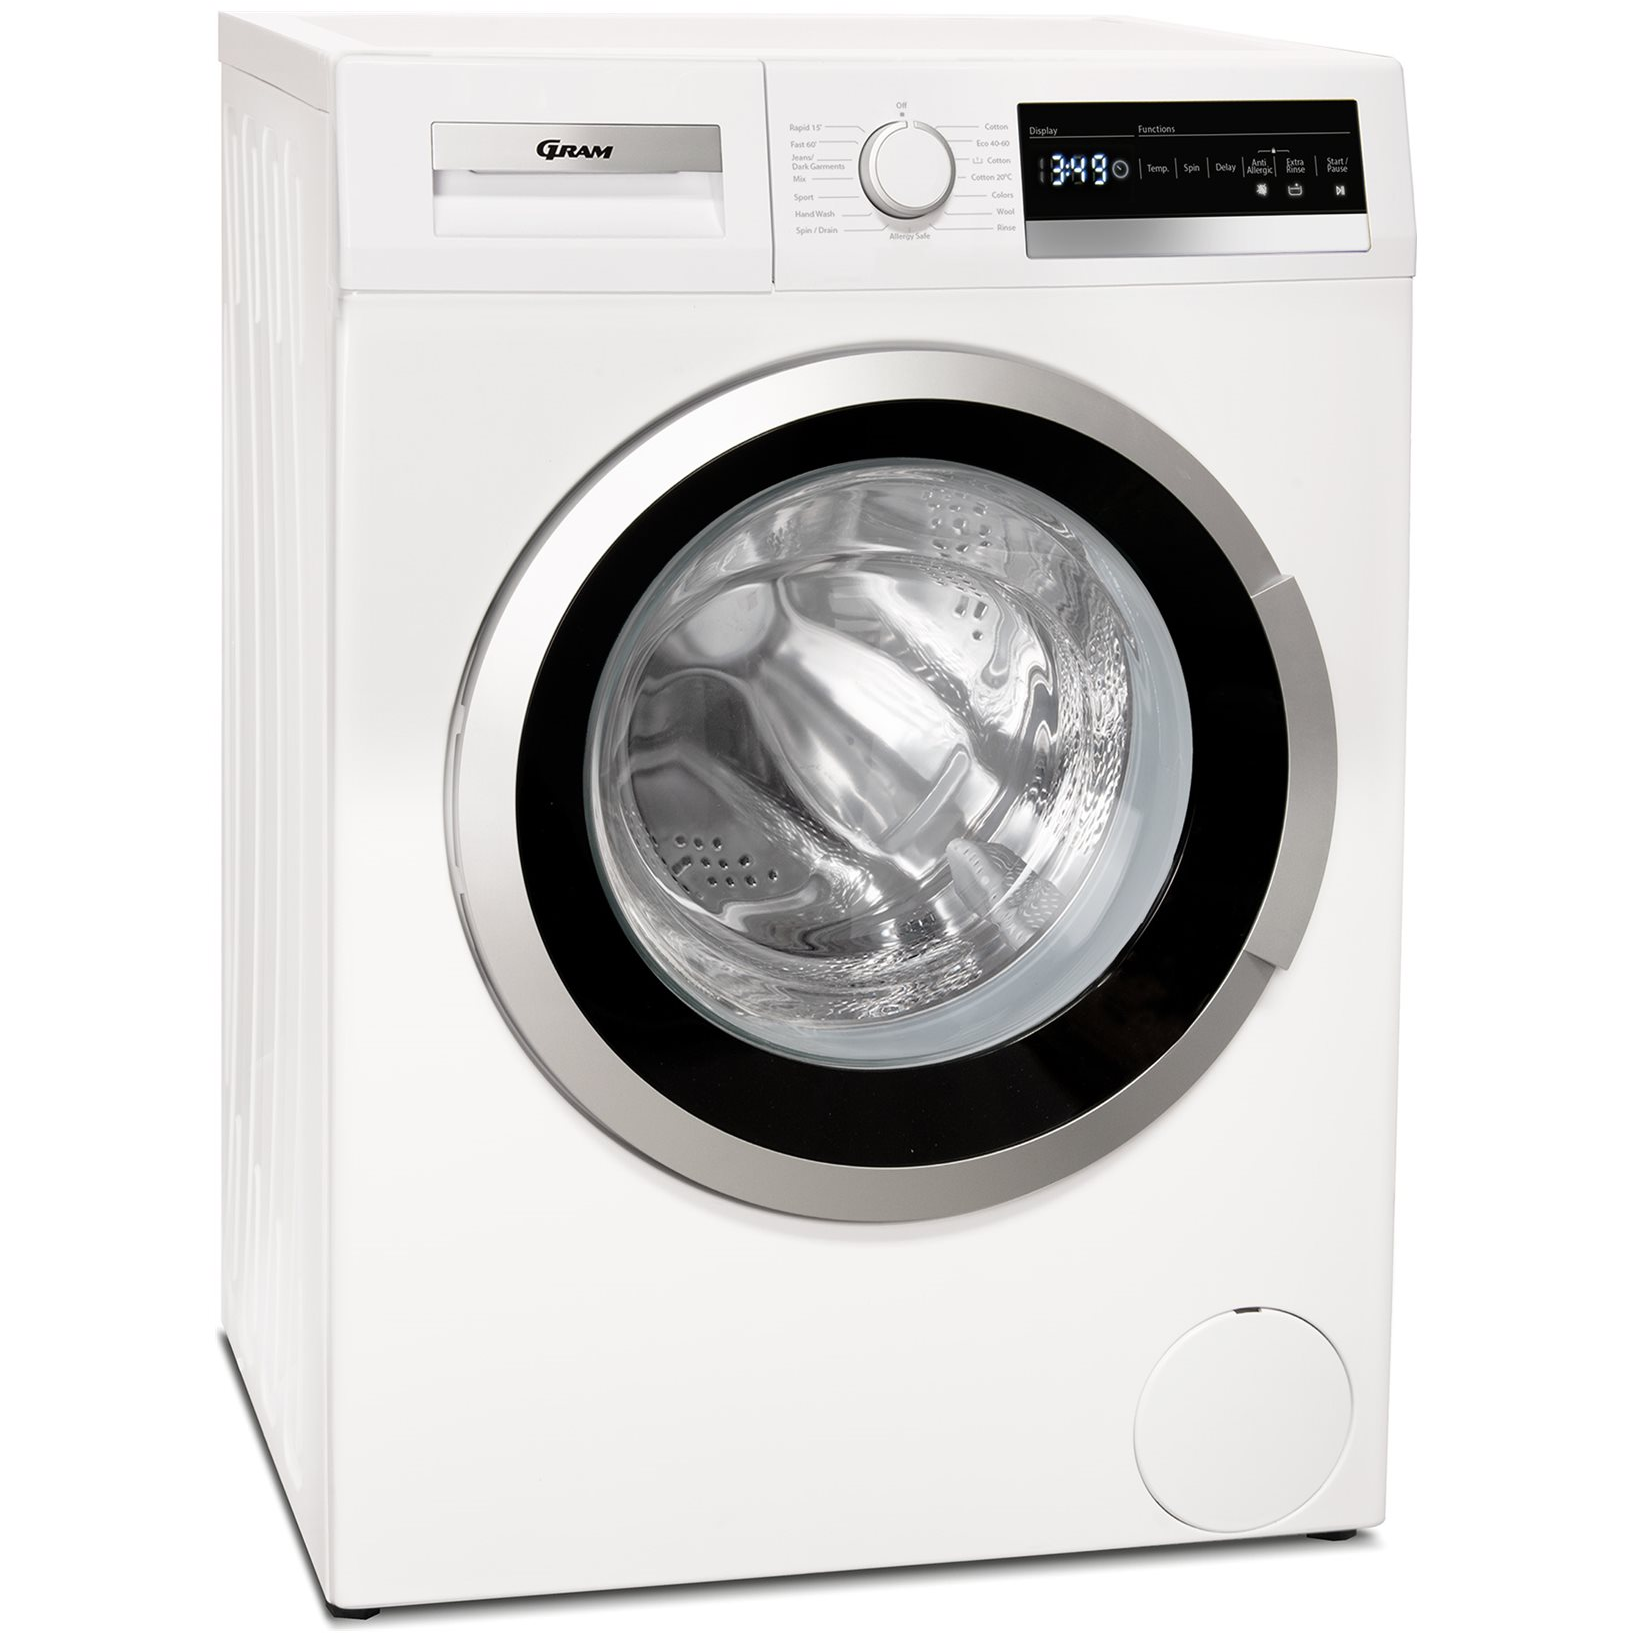 5709708234506 Gram WDE 71814-92 - Frontbetjent vaskemaskine Hvidevarer,Vaskemaskine,Frontbetjente vaskemaskiner 8000345060 WDE 71814-92